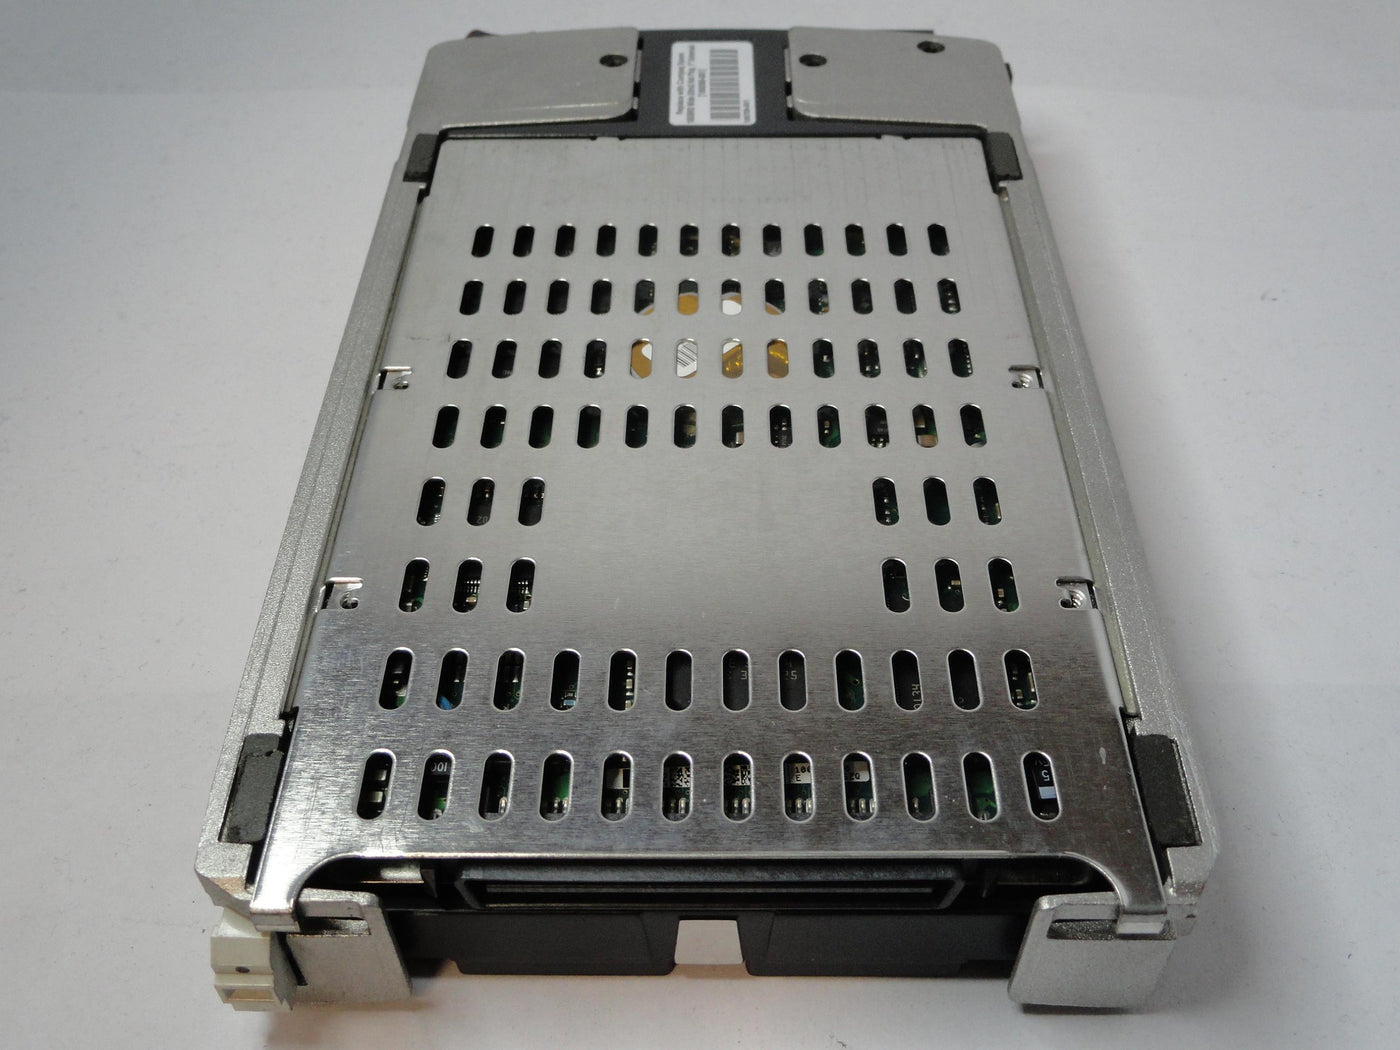 MC0541_9T4006-023_Seagate Compaq 18.2GB SCSI 80 Pin 15Krpm 3.5in HDD - Image4